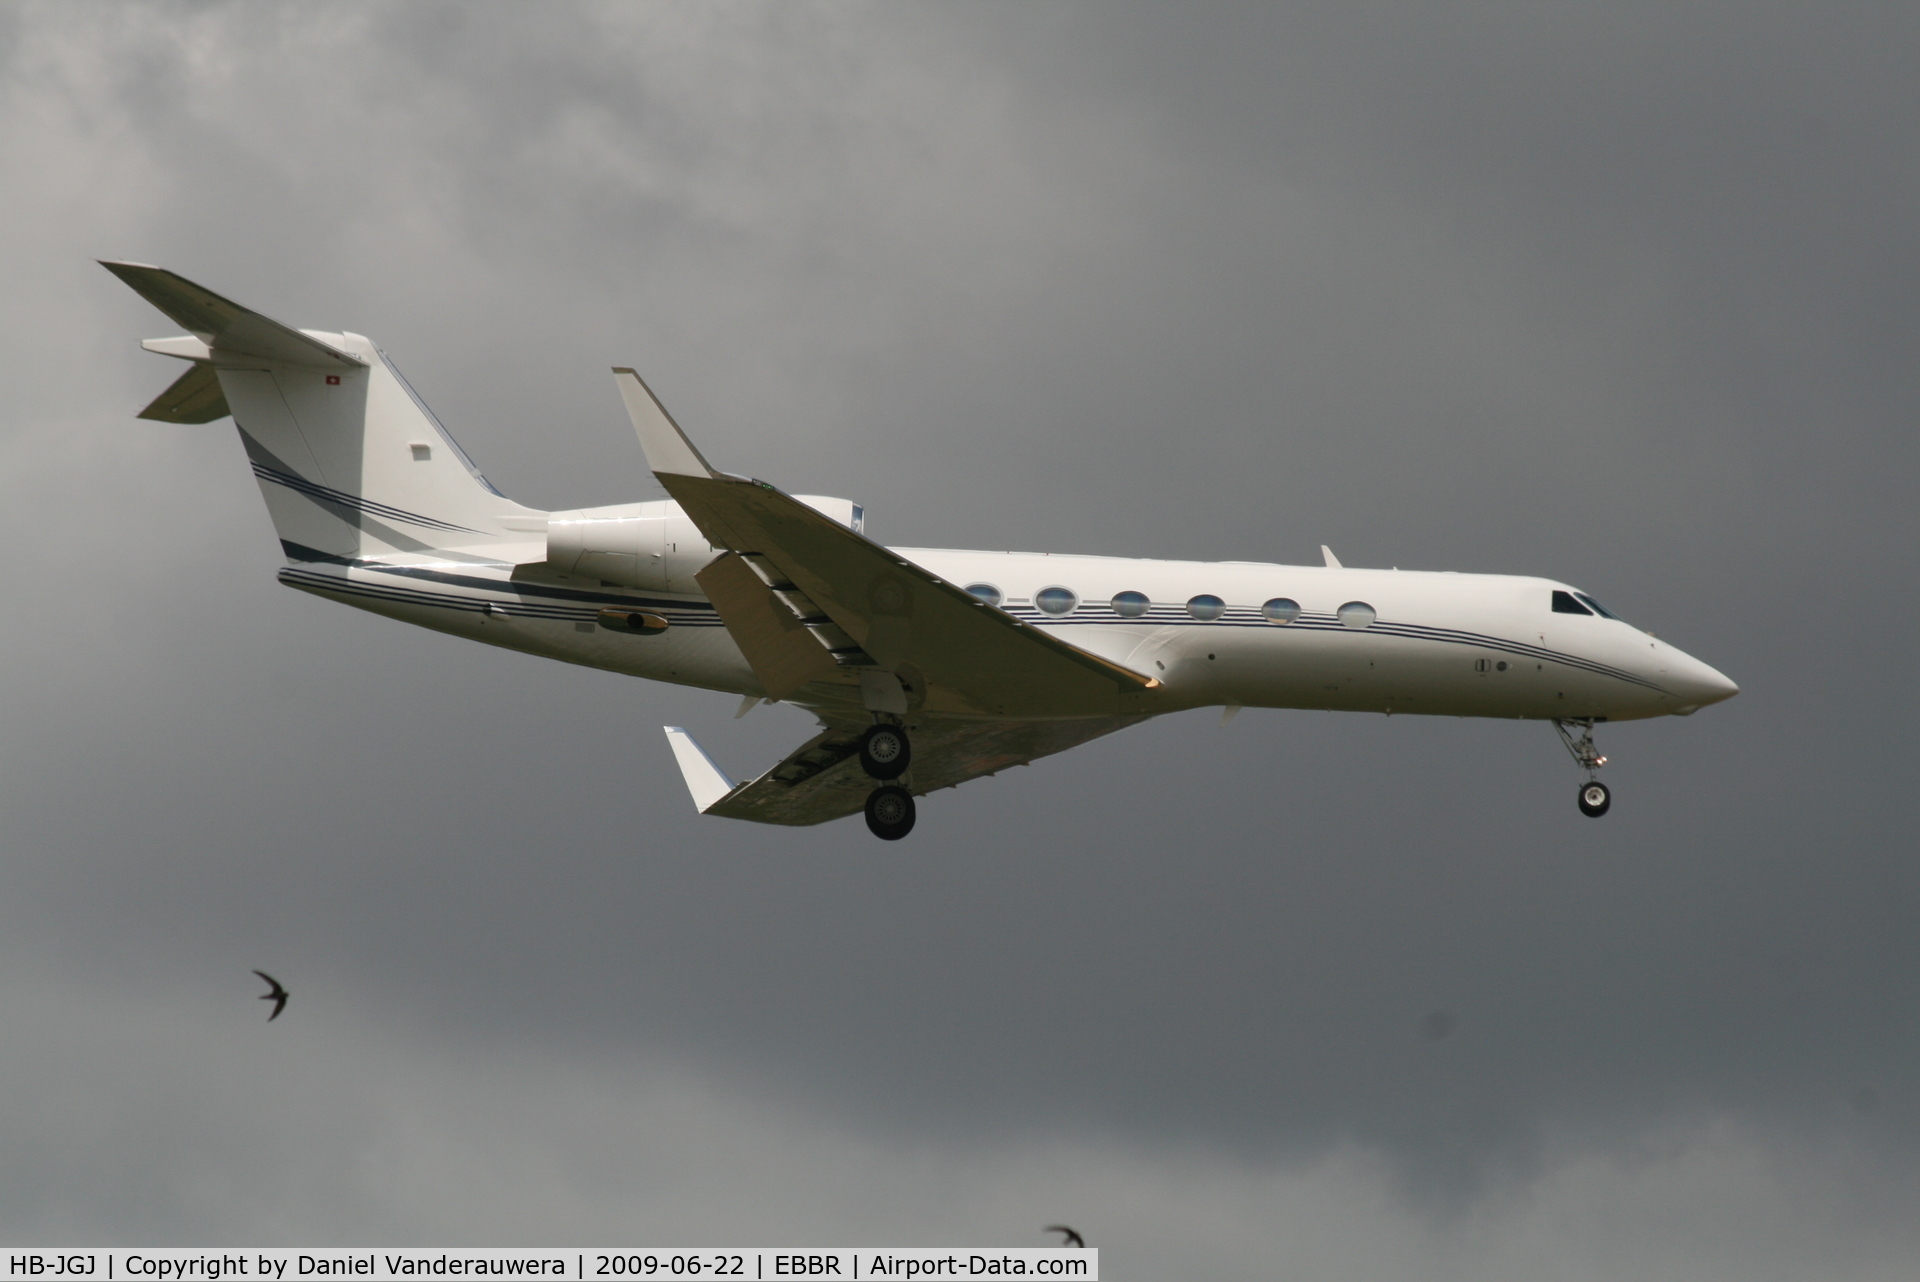 HB-JGJ, 2008 Gulfstream Aerospace GIV-X (G450) C/N 4122, Descending to RWY 02